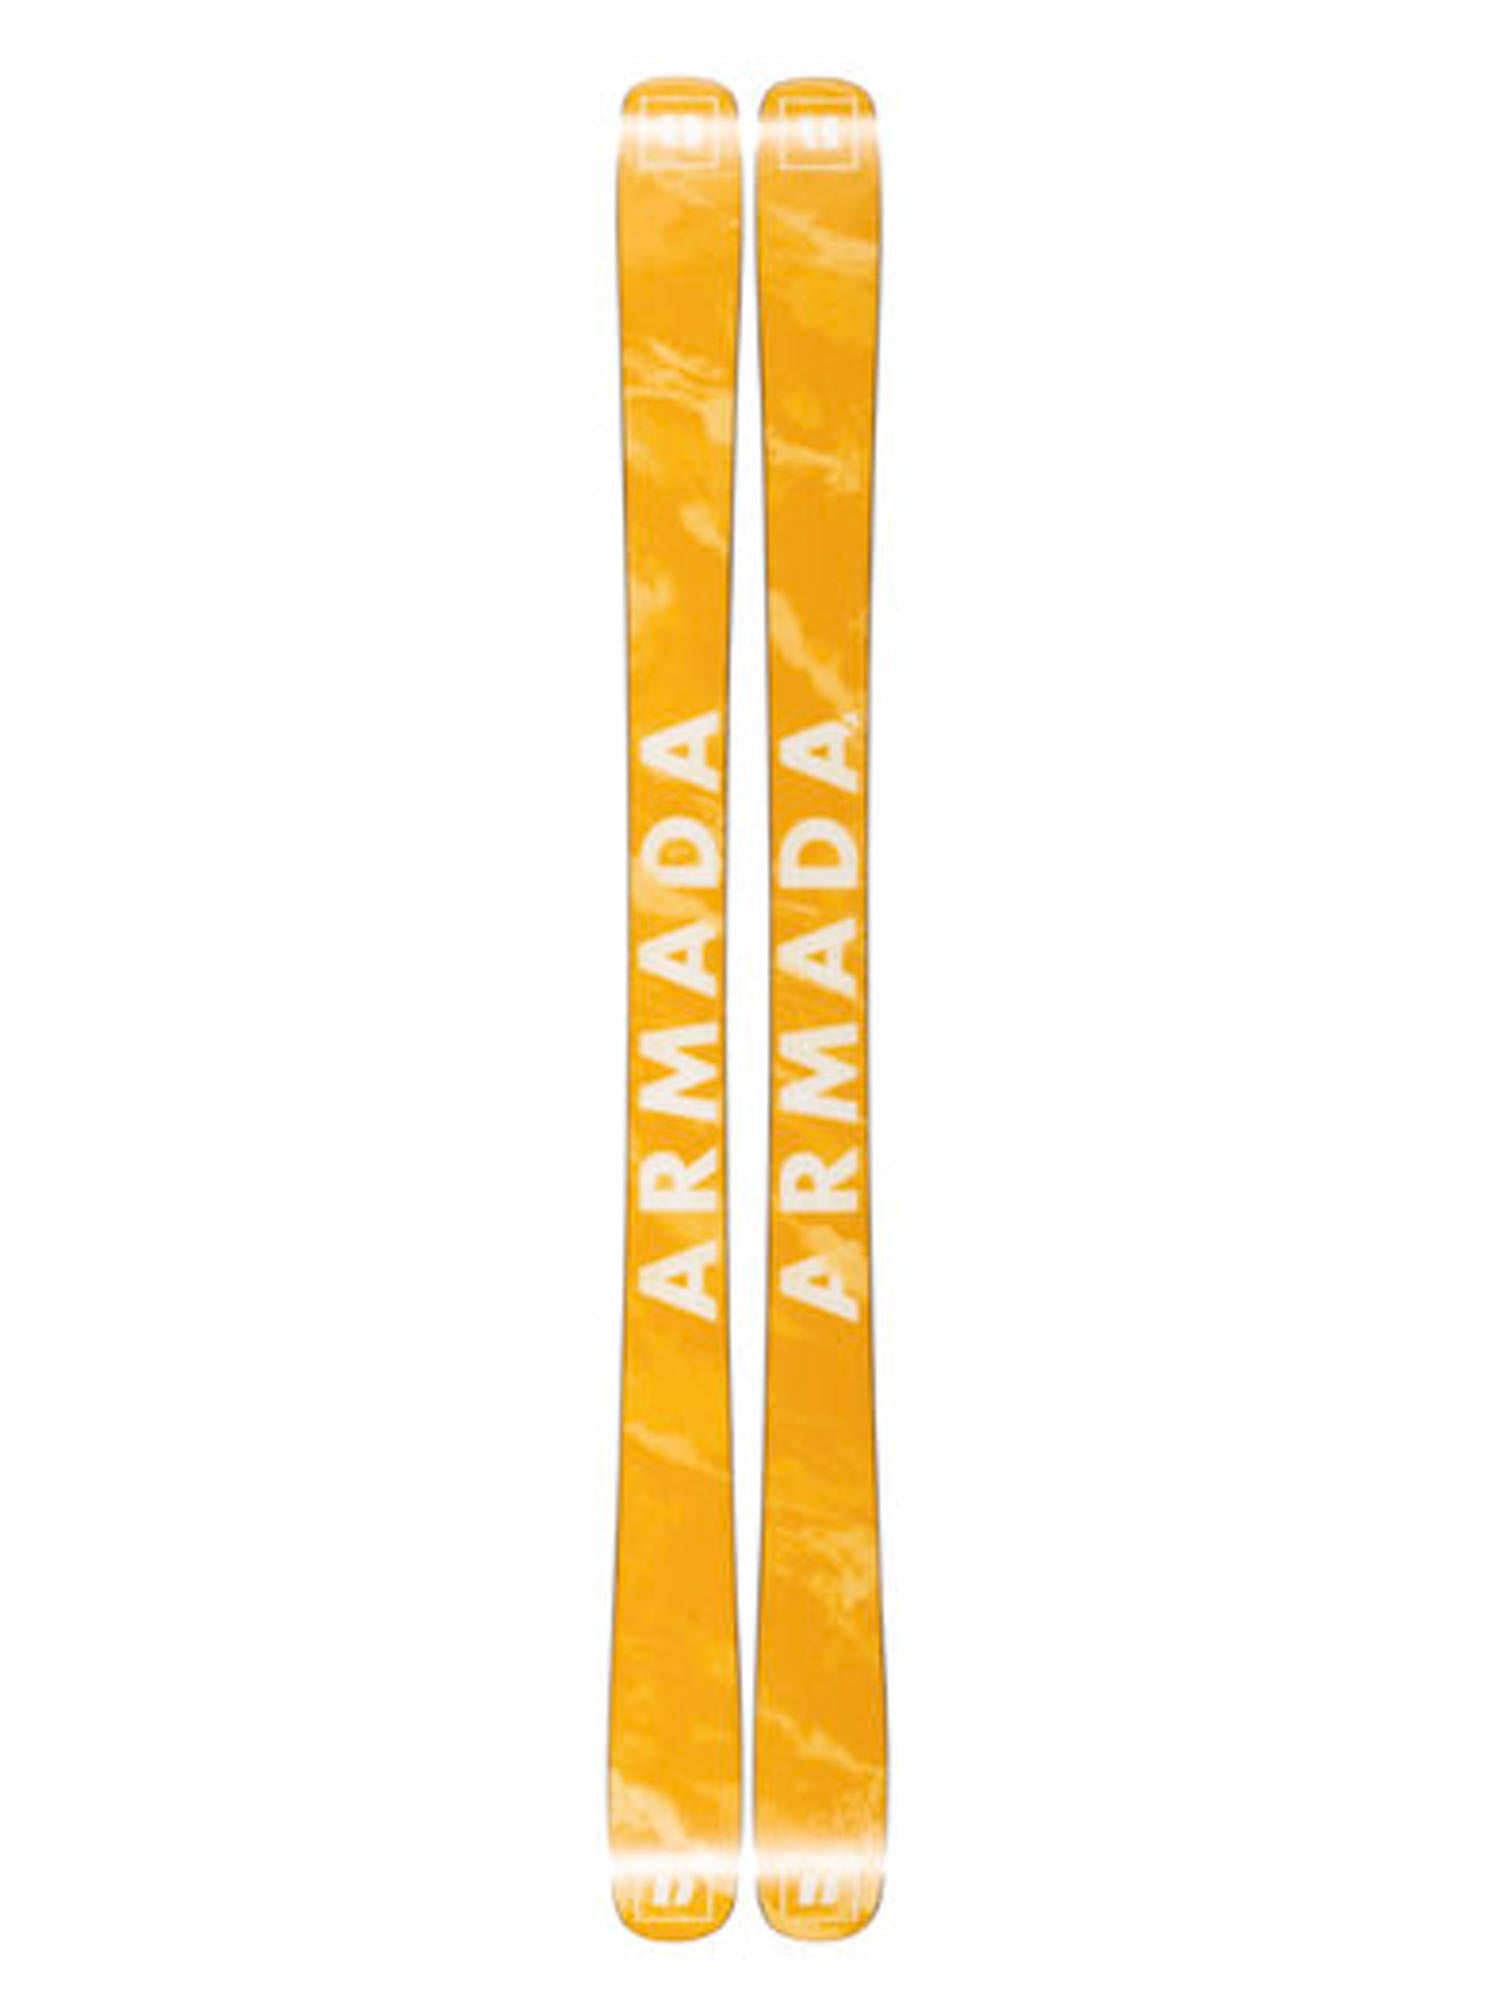 Bottom of skis, yellow with white Armada logo